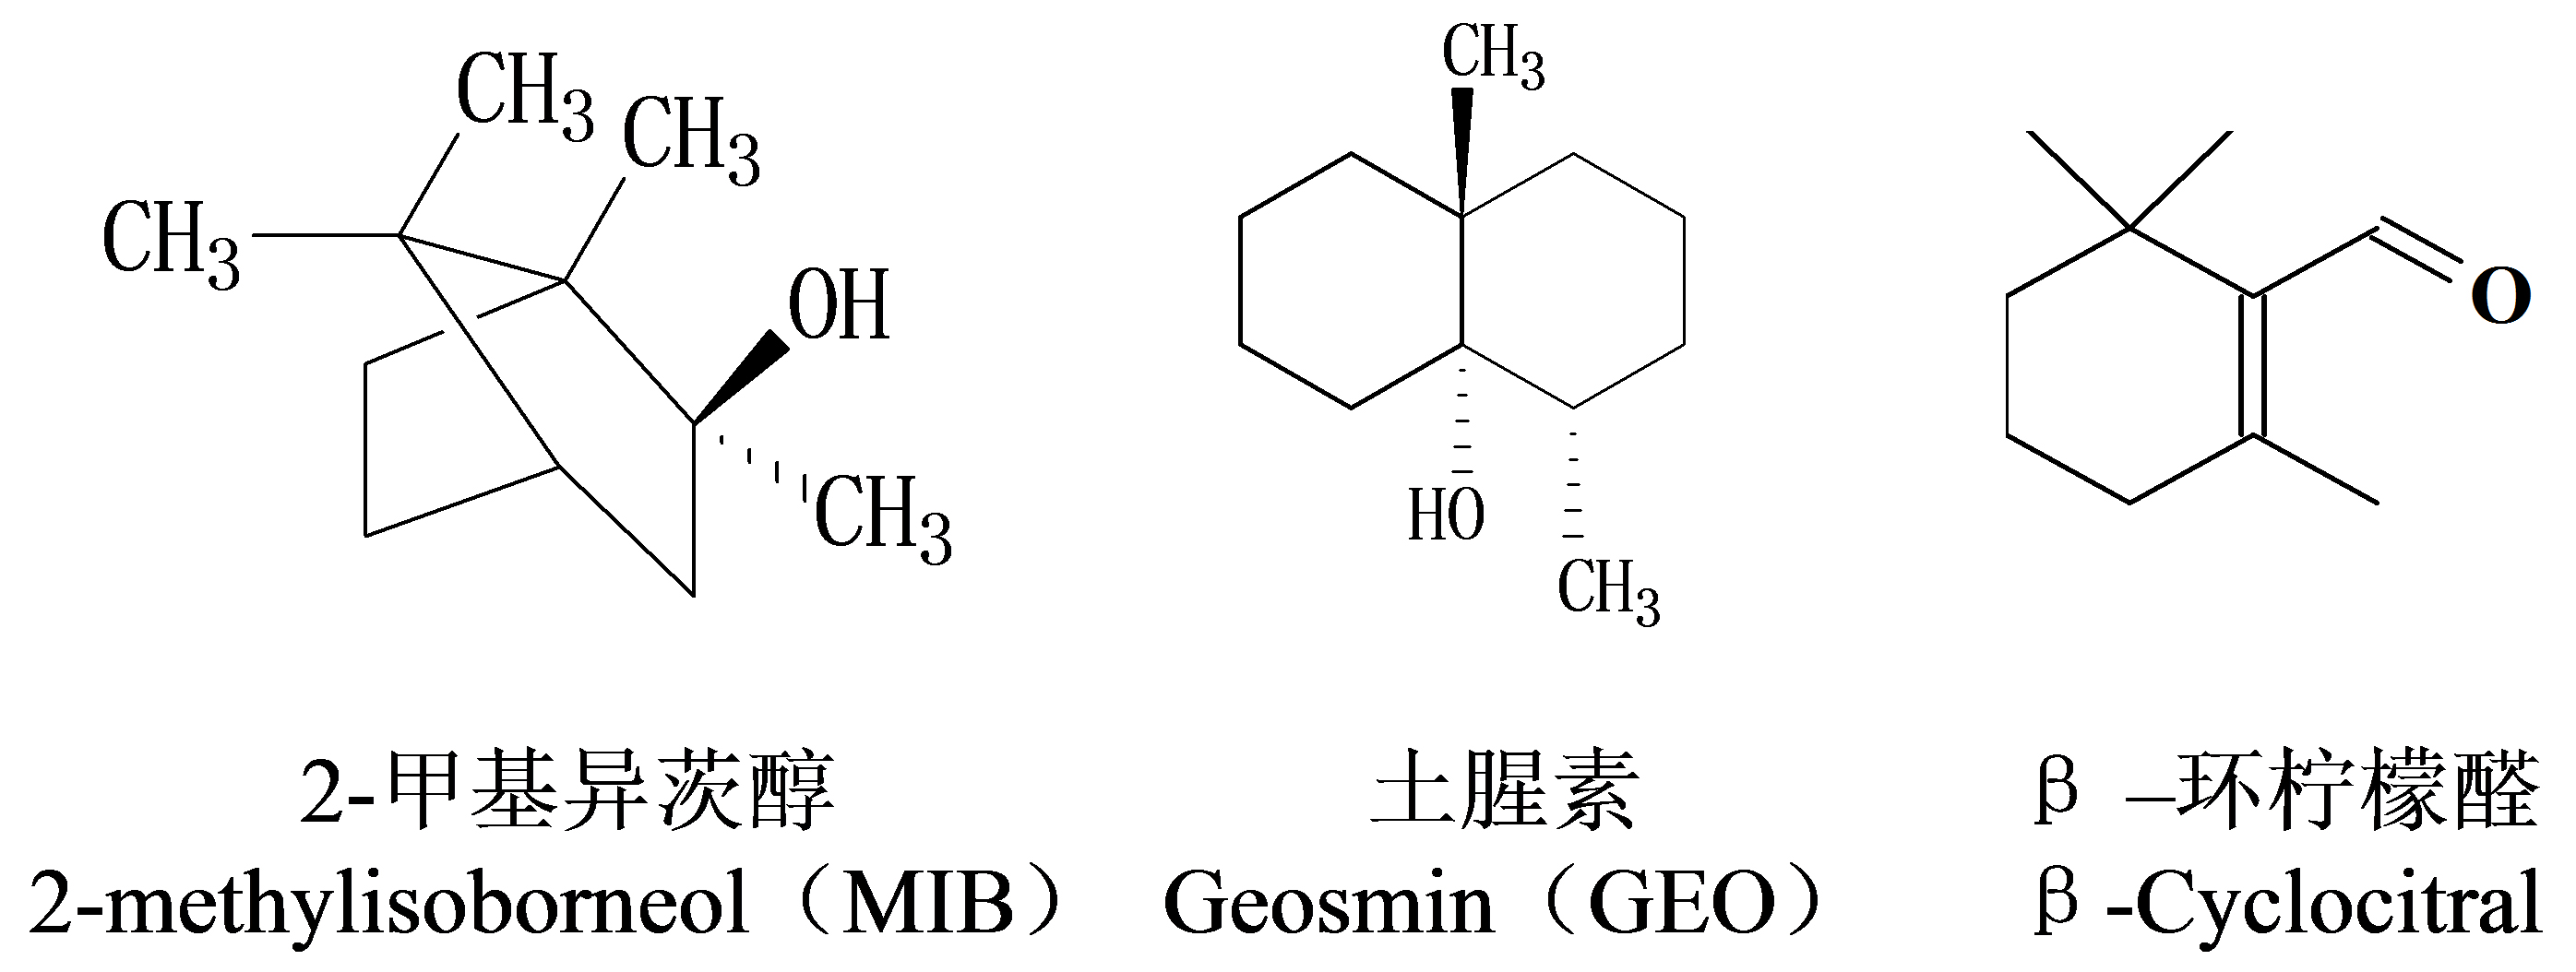 圖1 三種水中常見的異味化合物結構